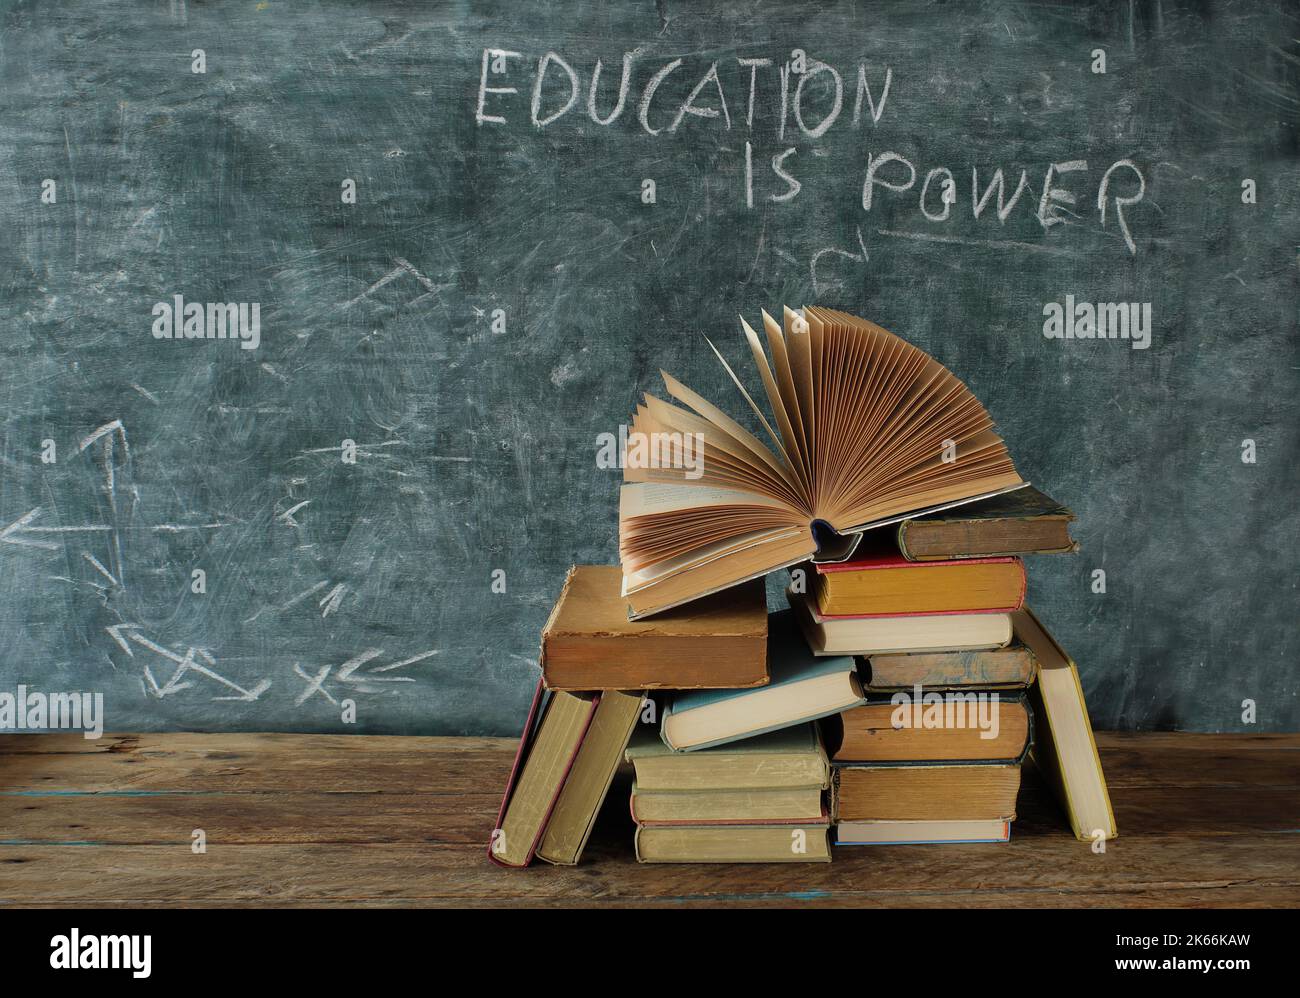 Libro aperto, libri hardback con l'istruzione è slogan di potere su lavagna, istruzione, apprendimento e concetto di lettura. Spazio libero per la copia Foto Stock